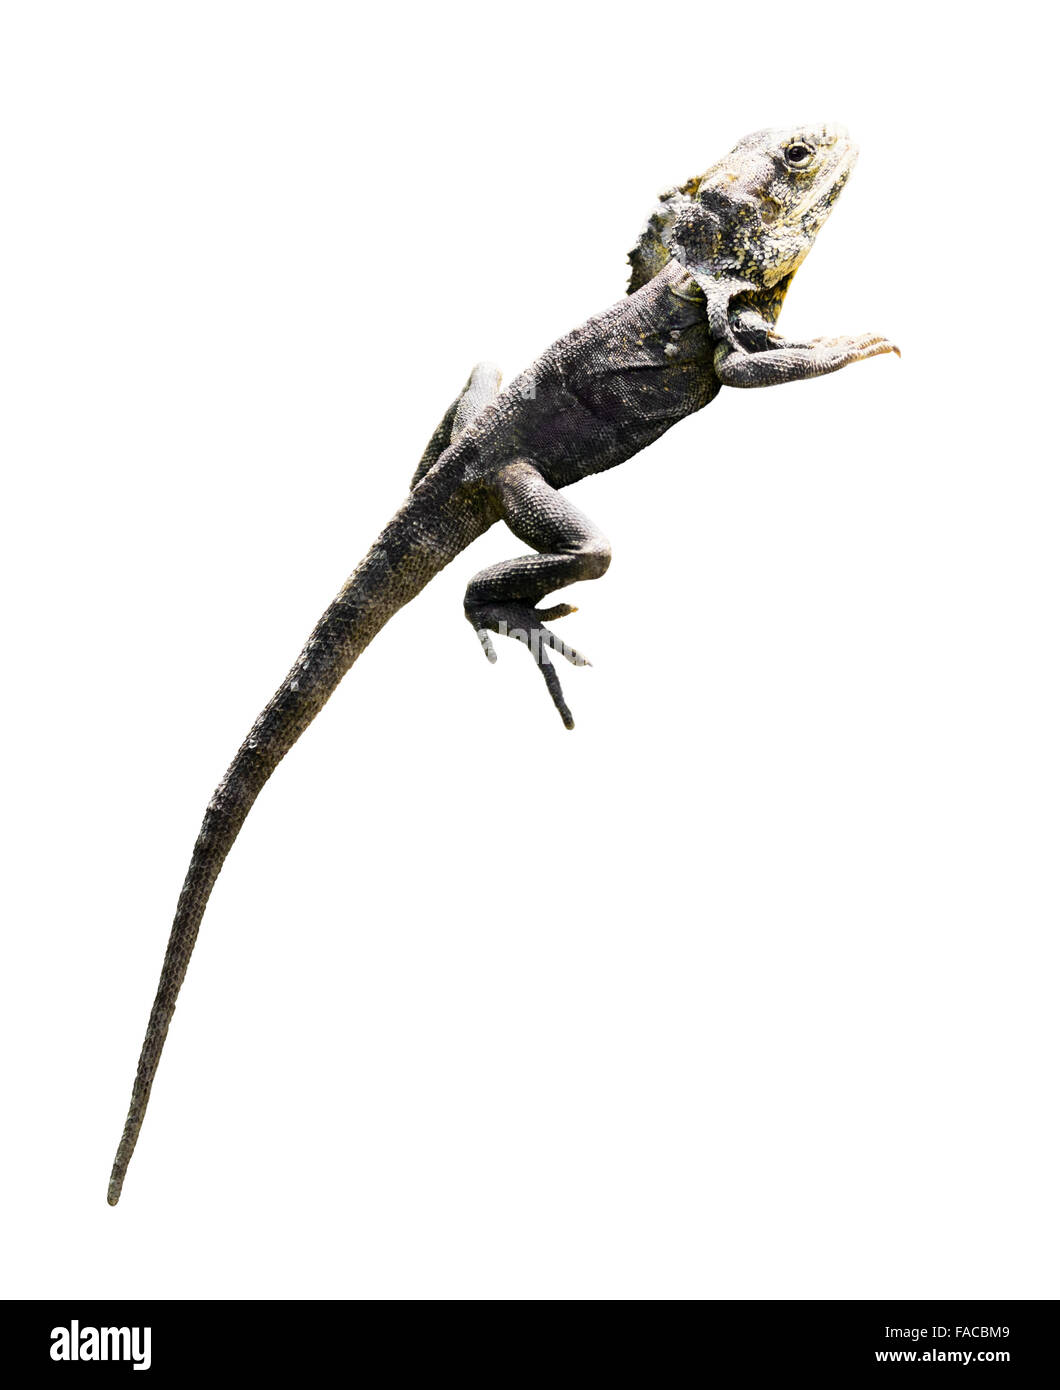 Frilled-neck lizard (Chlamydosaurus kingii). Isolated  over white background Stock Photo